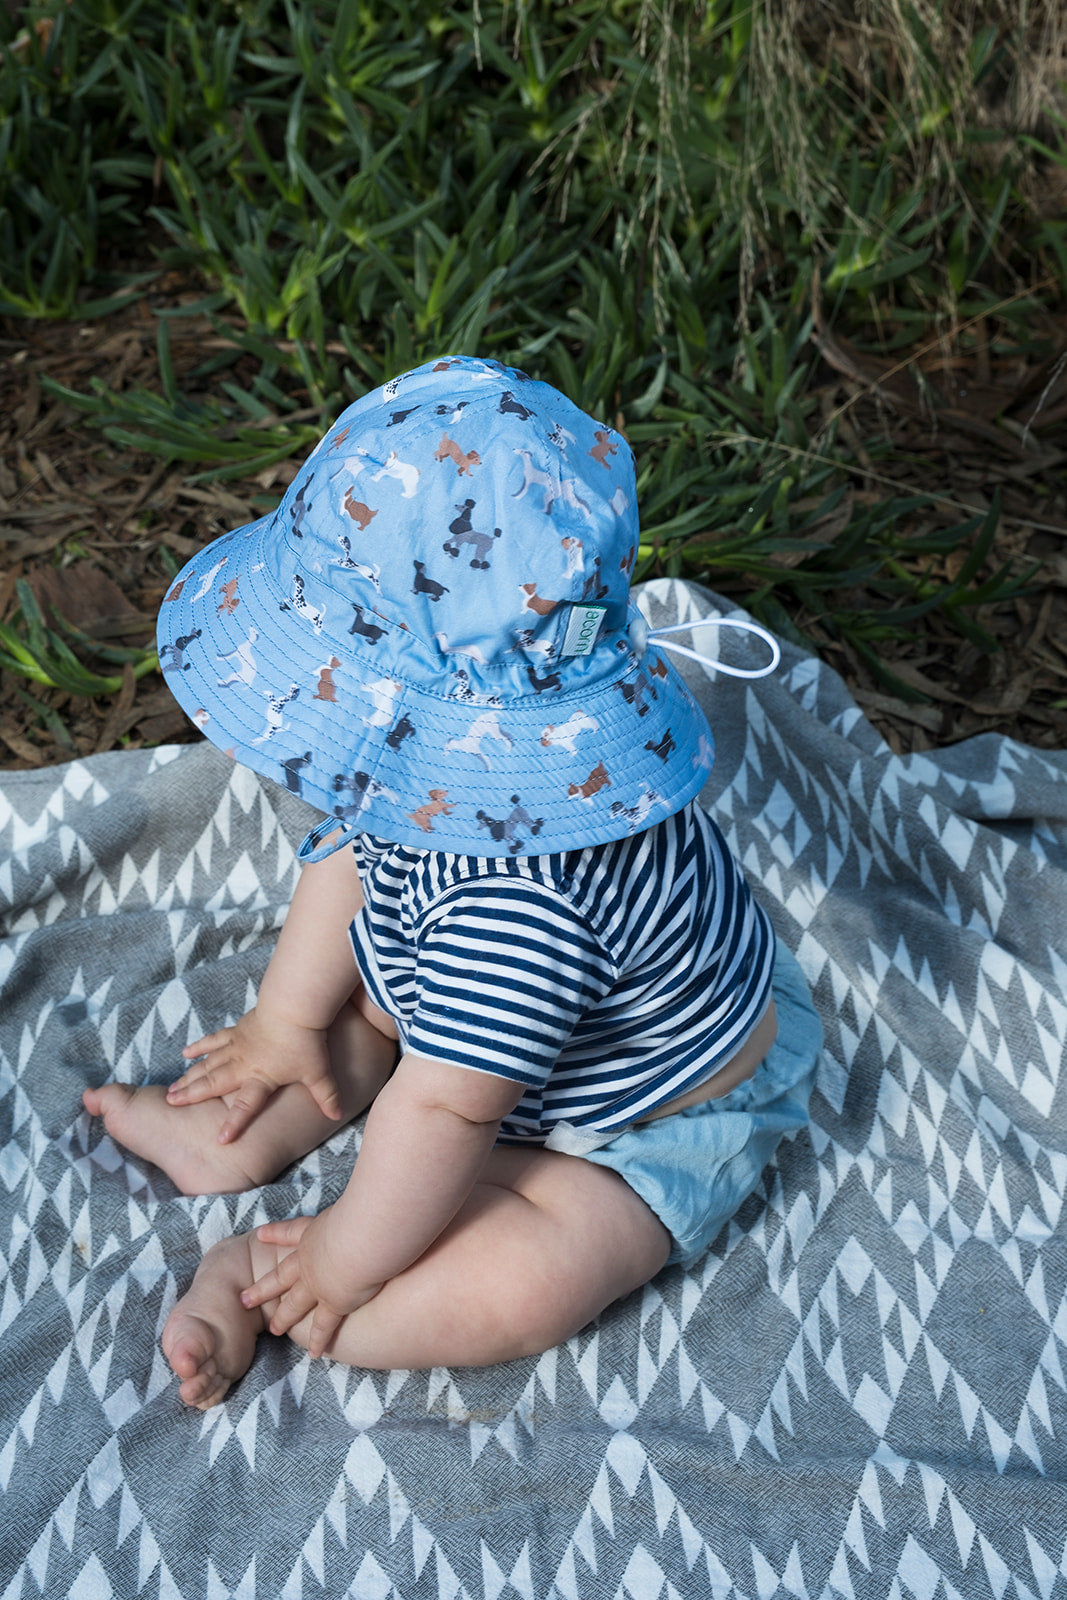 Acorn - Central Park Doggies Wide Brim Infant Hat - Blue/Brown/White